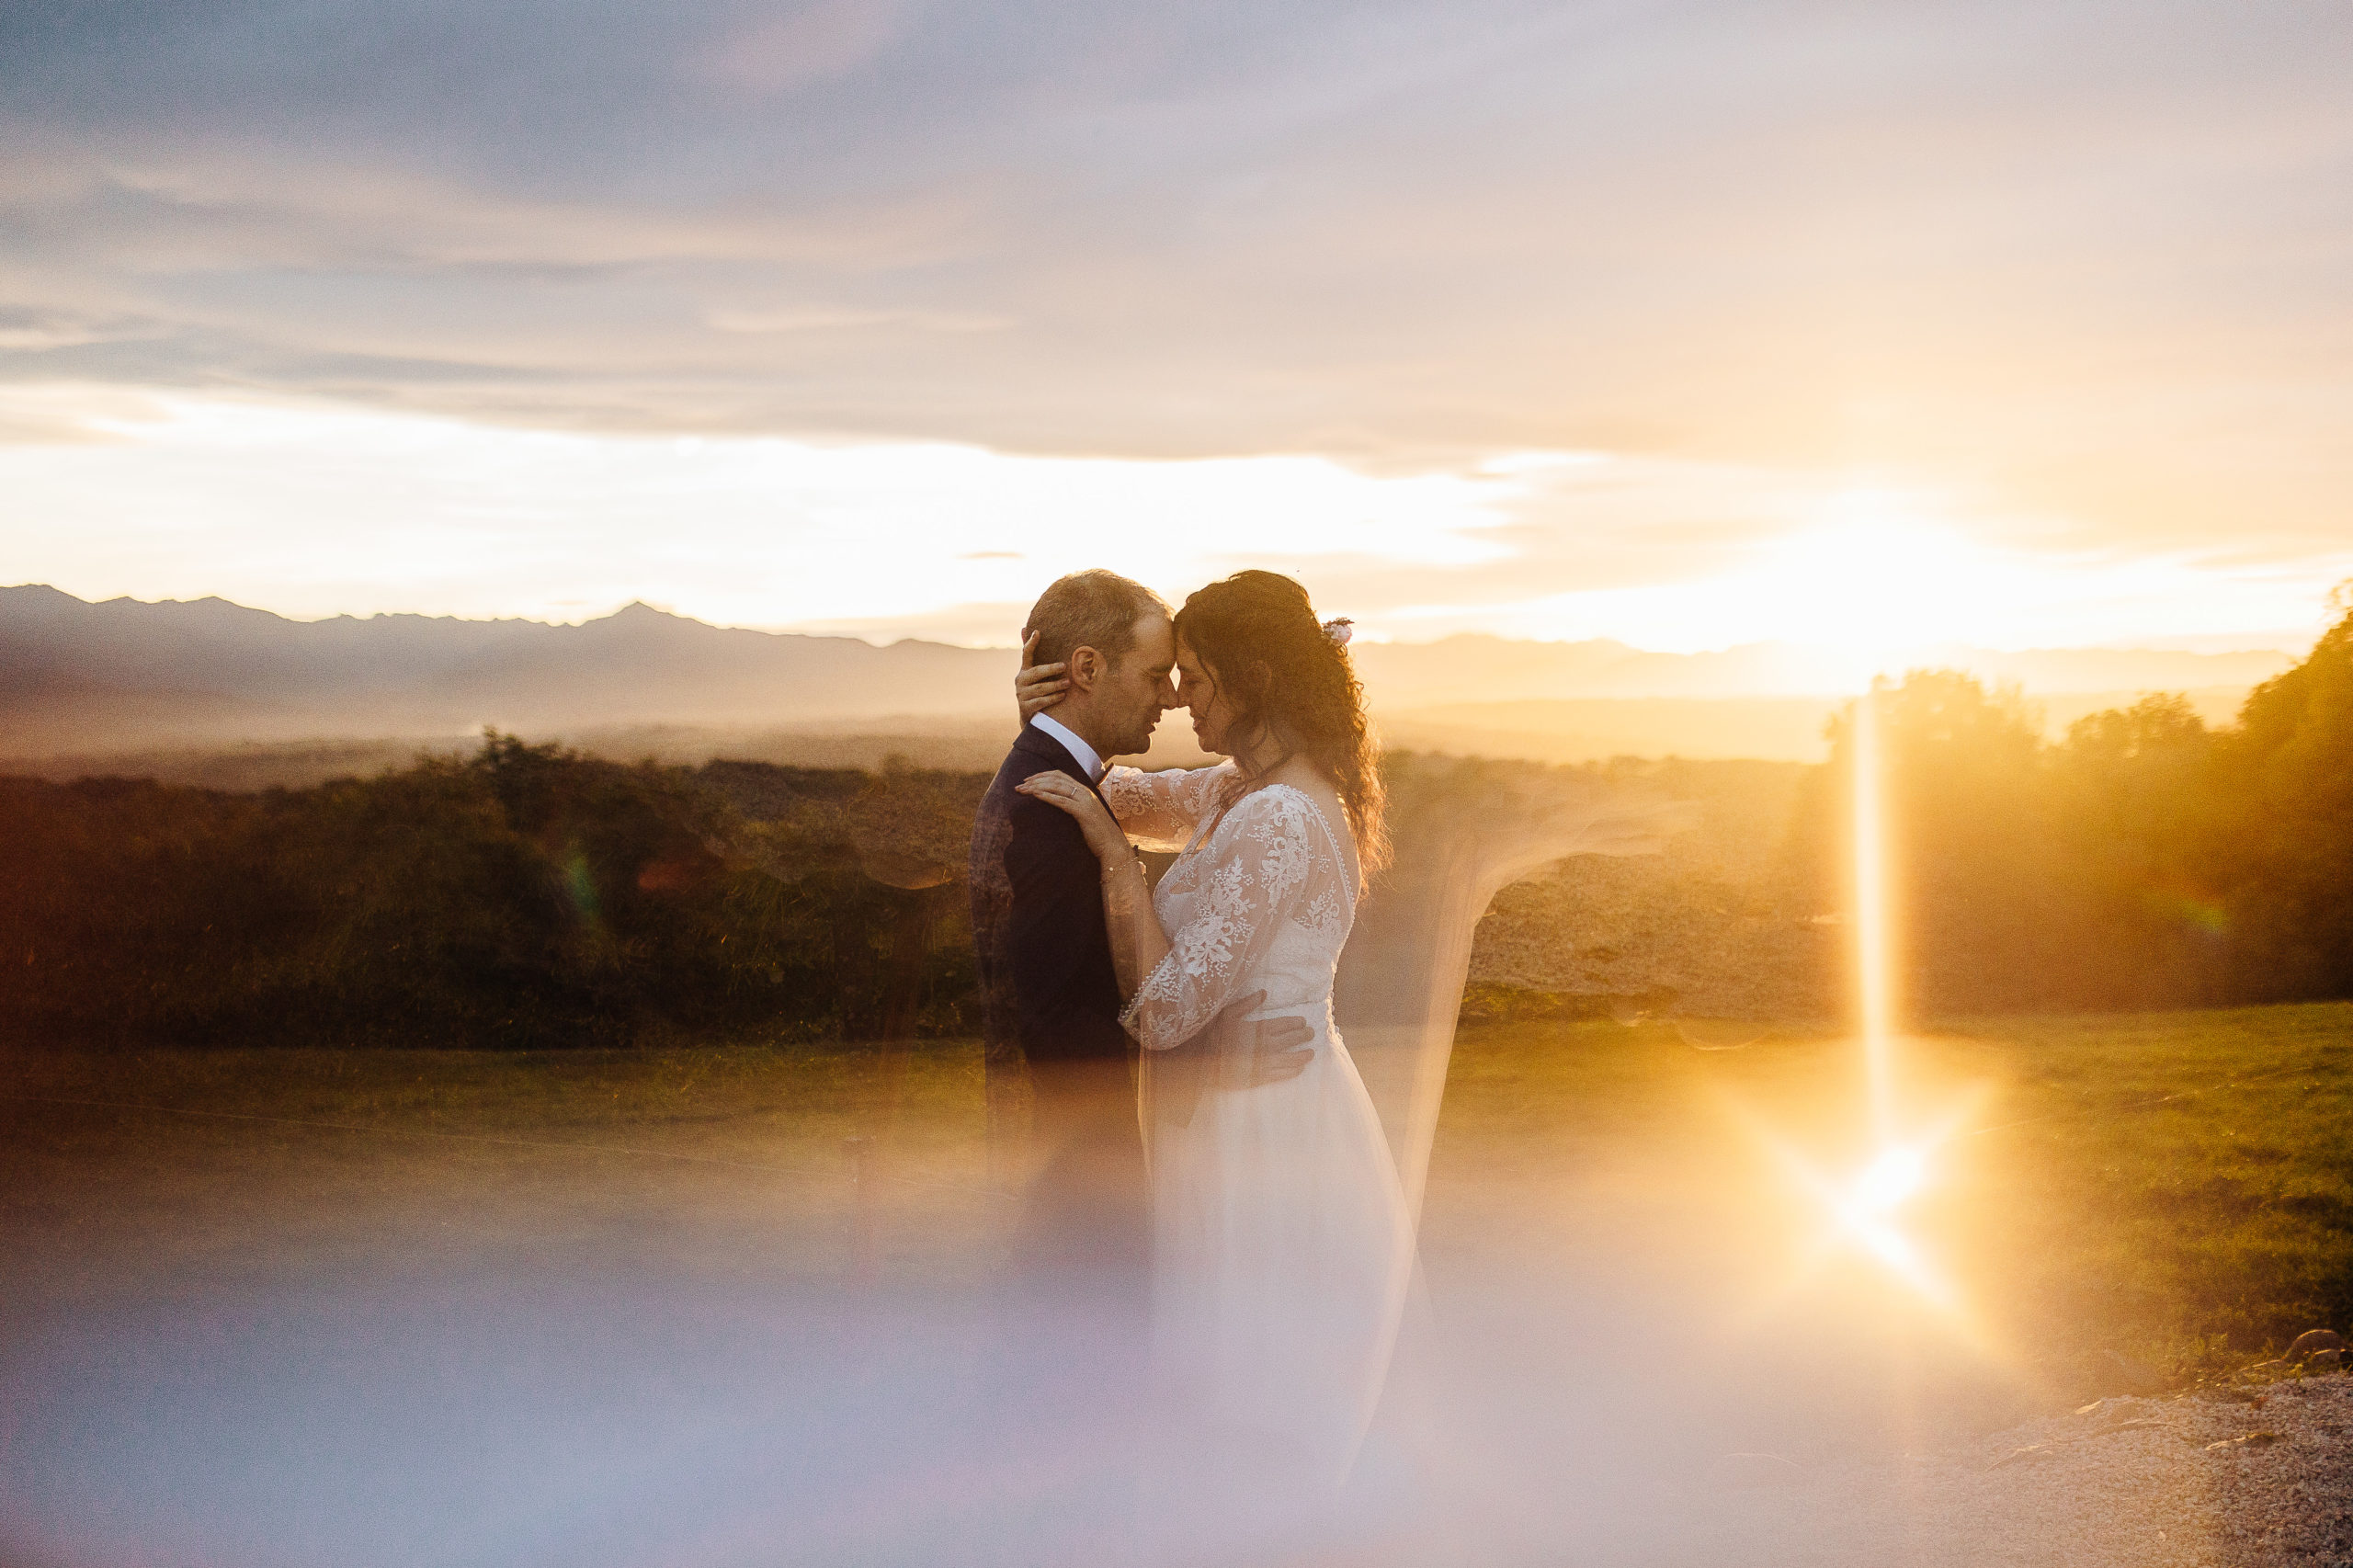 photographe mariage pau - belevedere du domaine - coucher de soleil mariage - emilie massal photographe